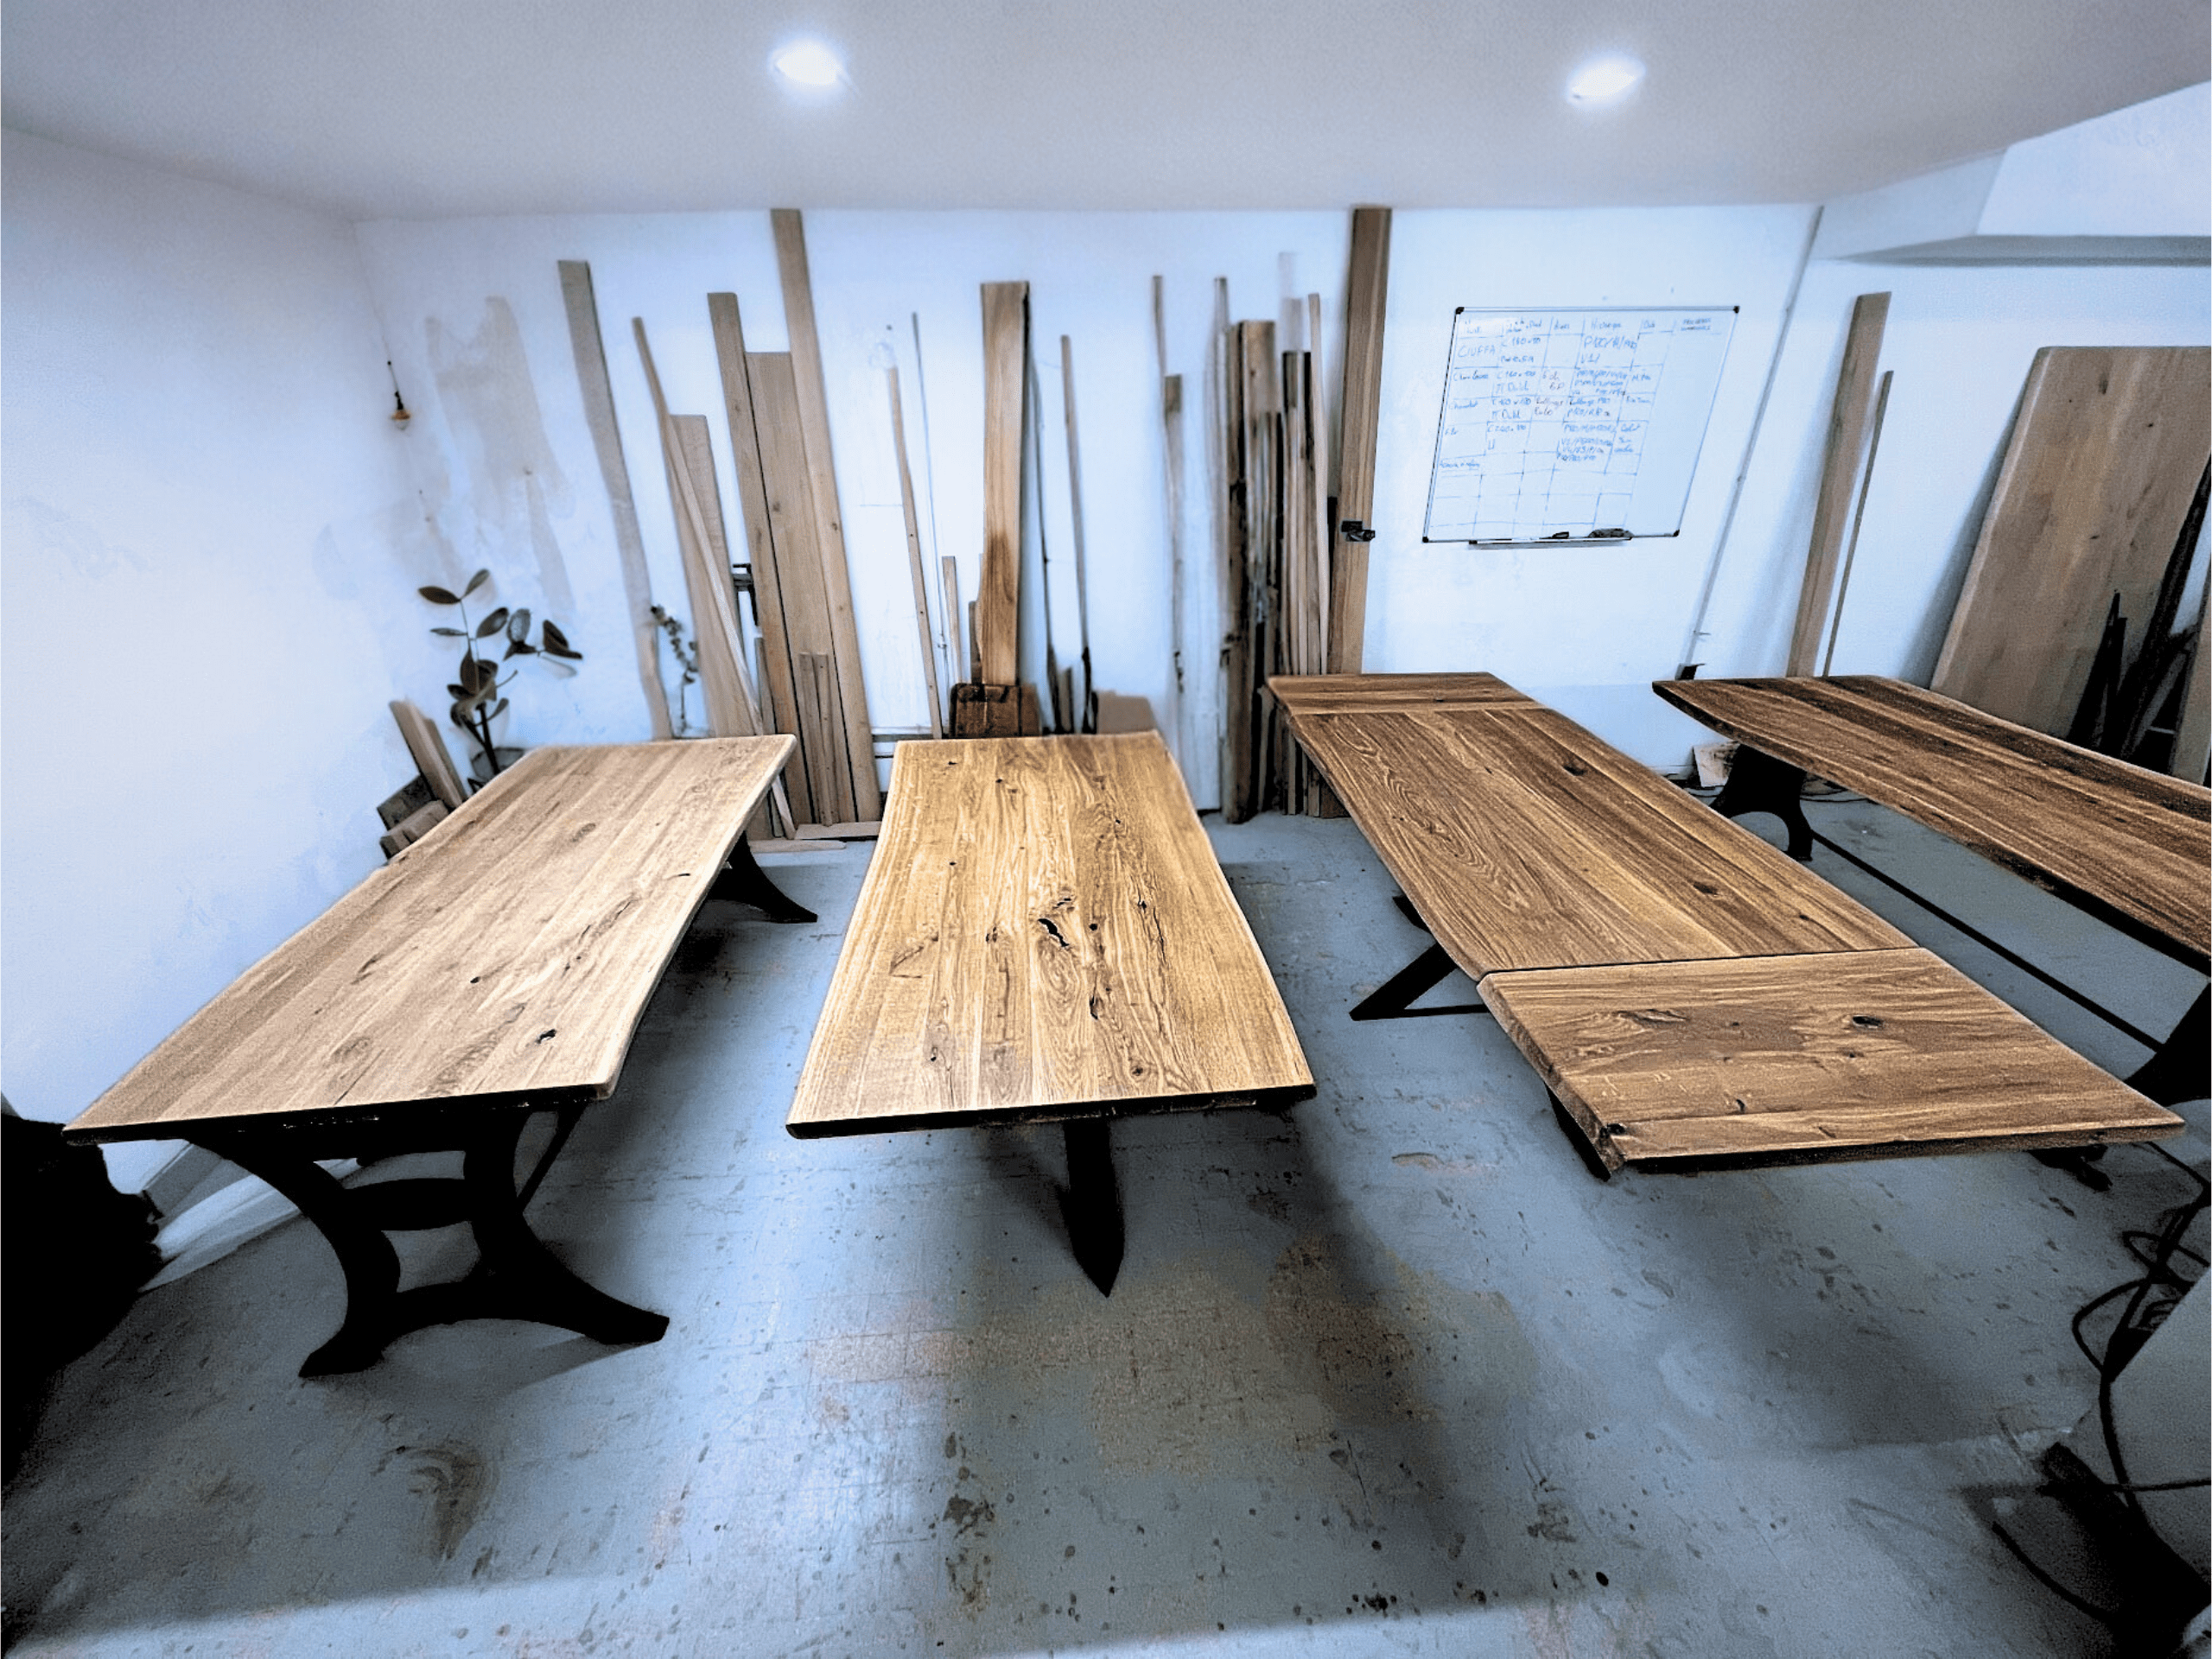 Comment est préparé le bois de votre plateau de table - VitaDeco